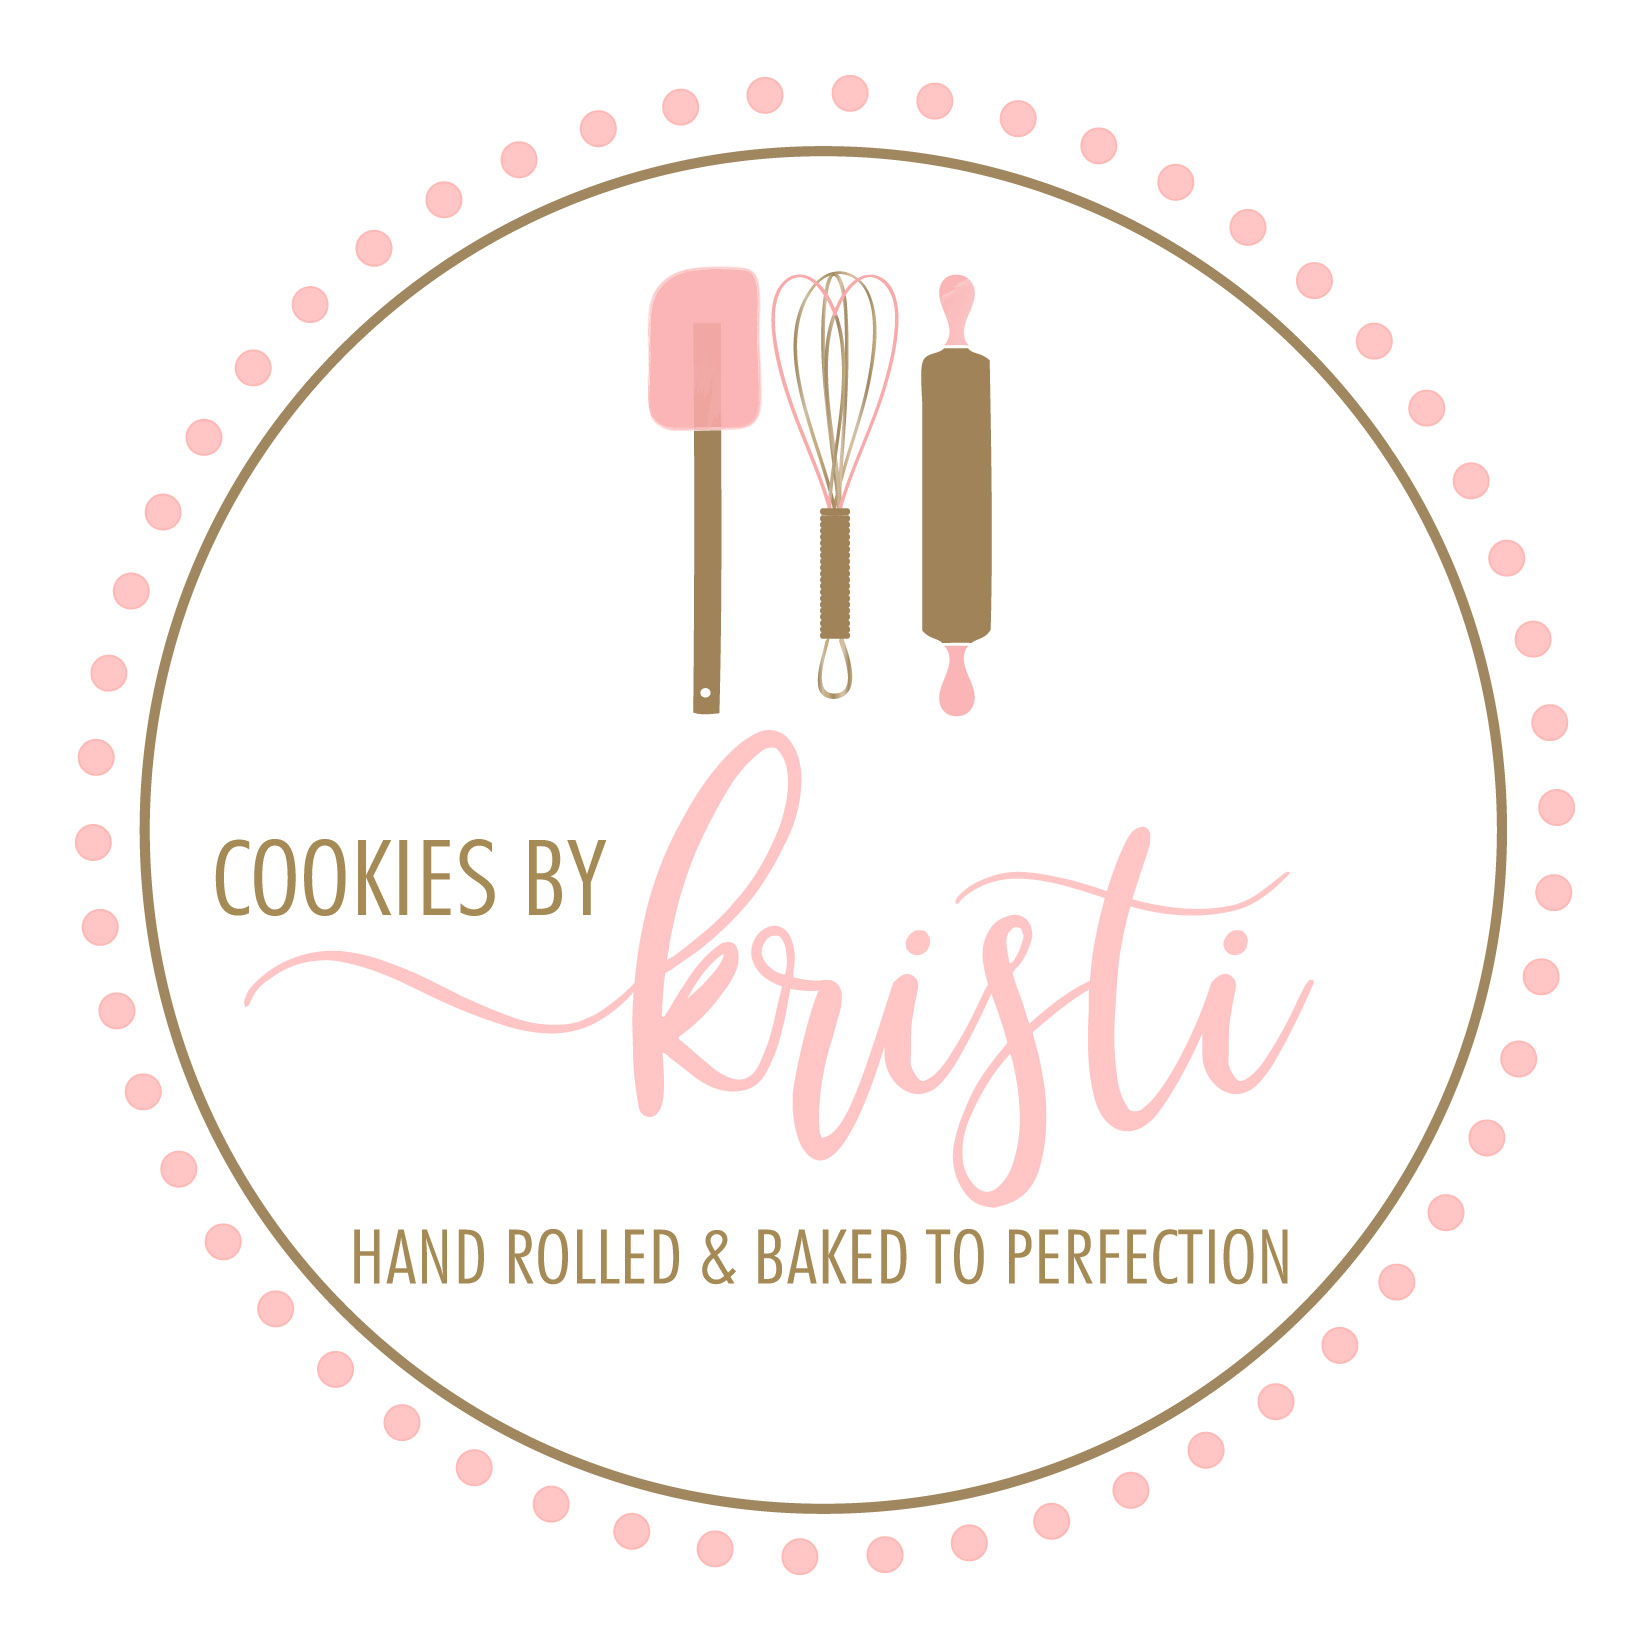 Cookies by Kristi